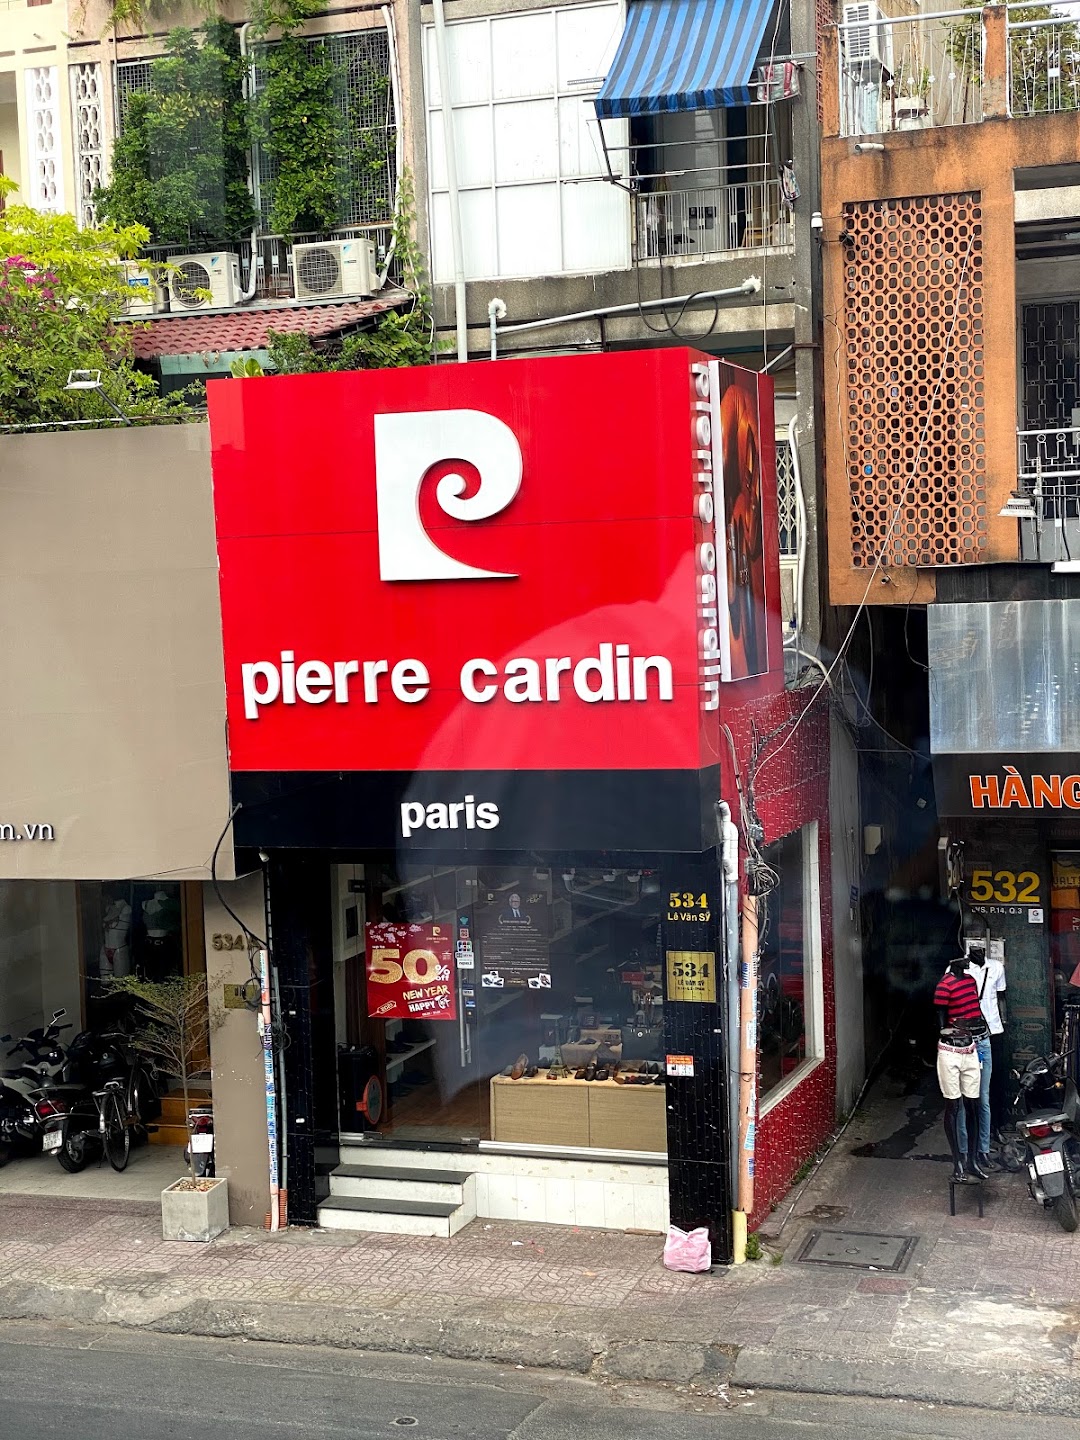 Pierre Cardin Paris Vietnam